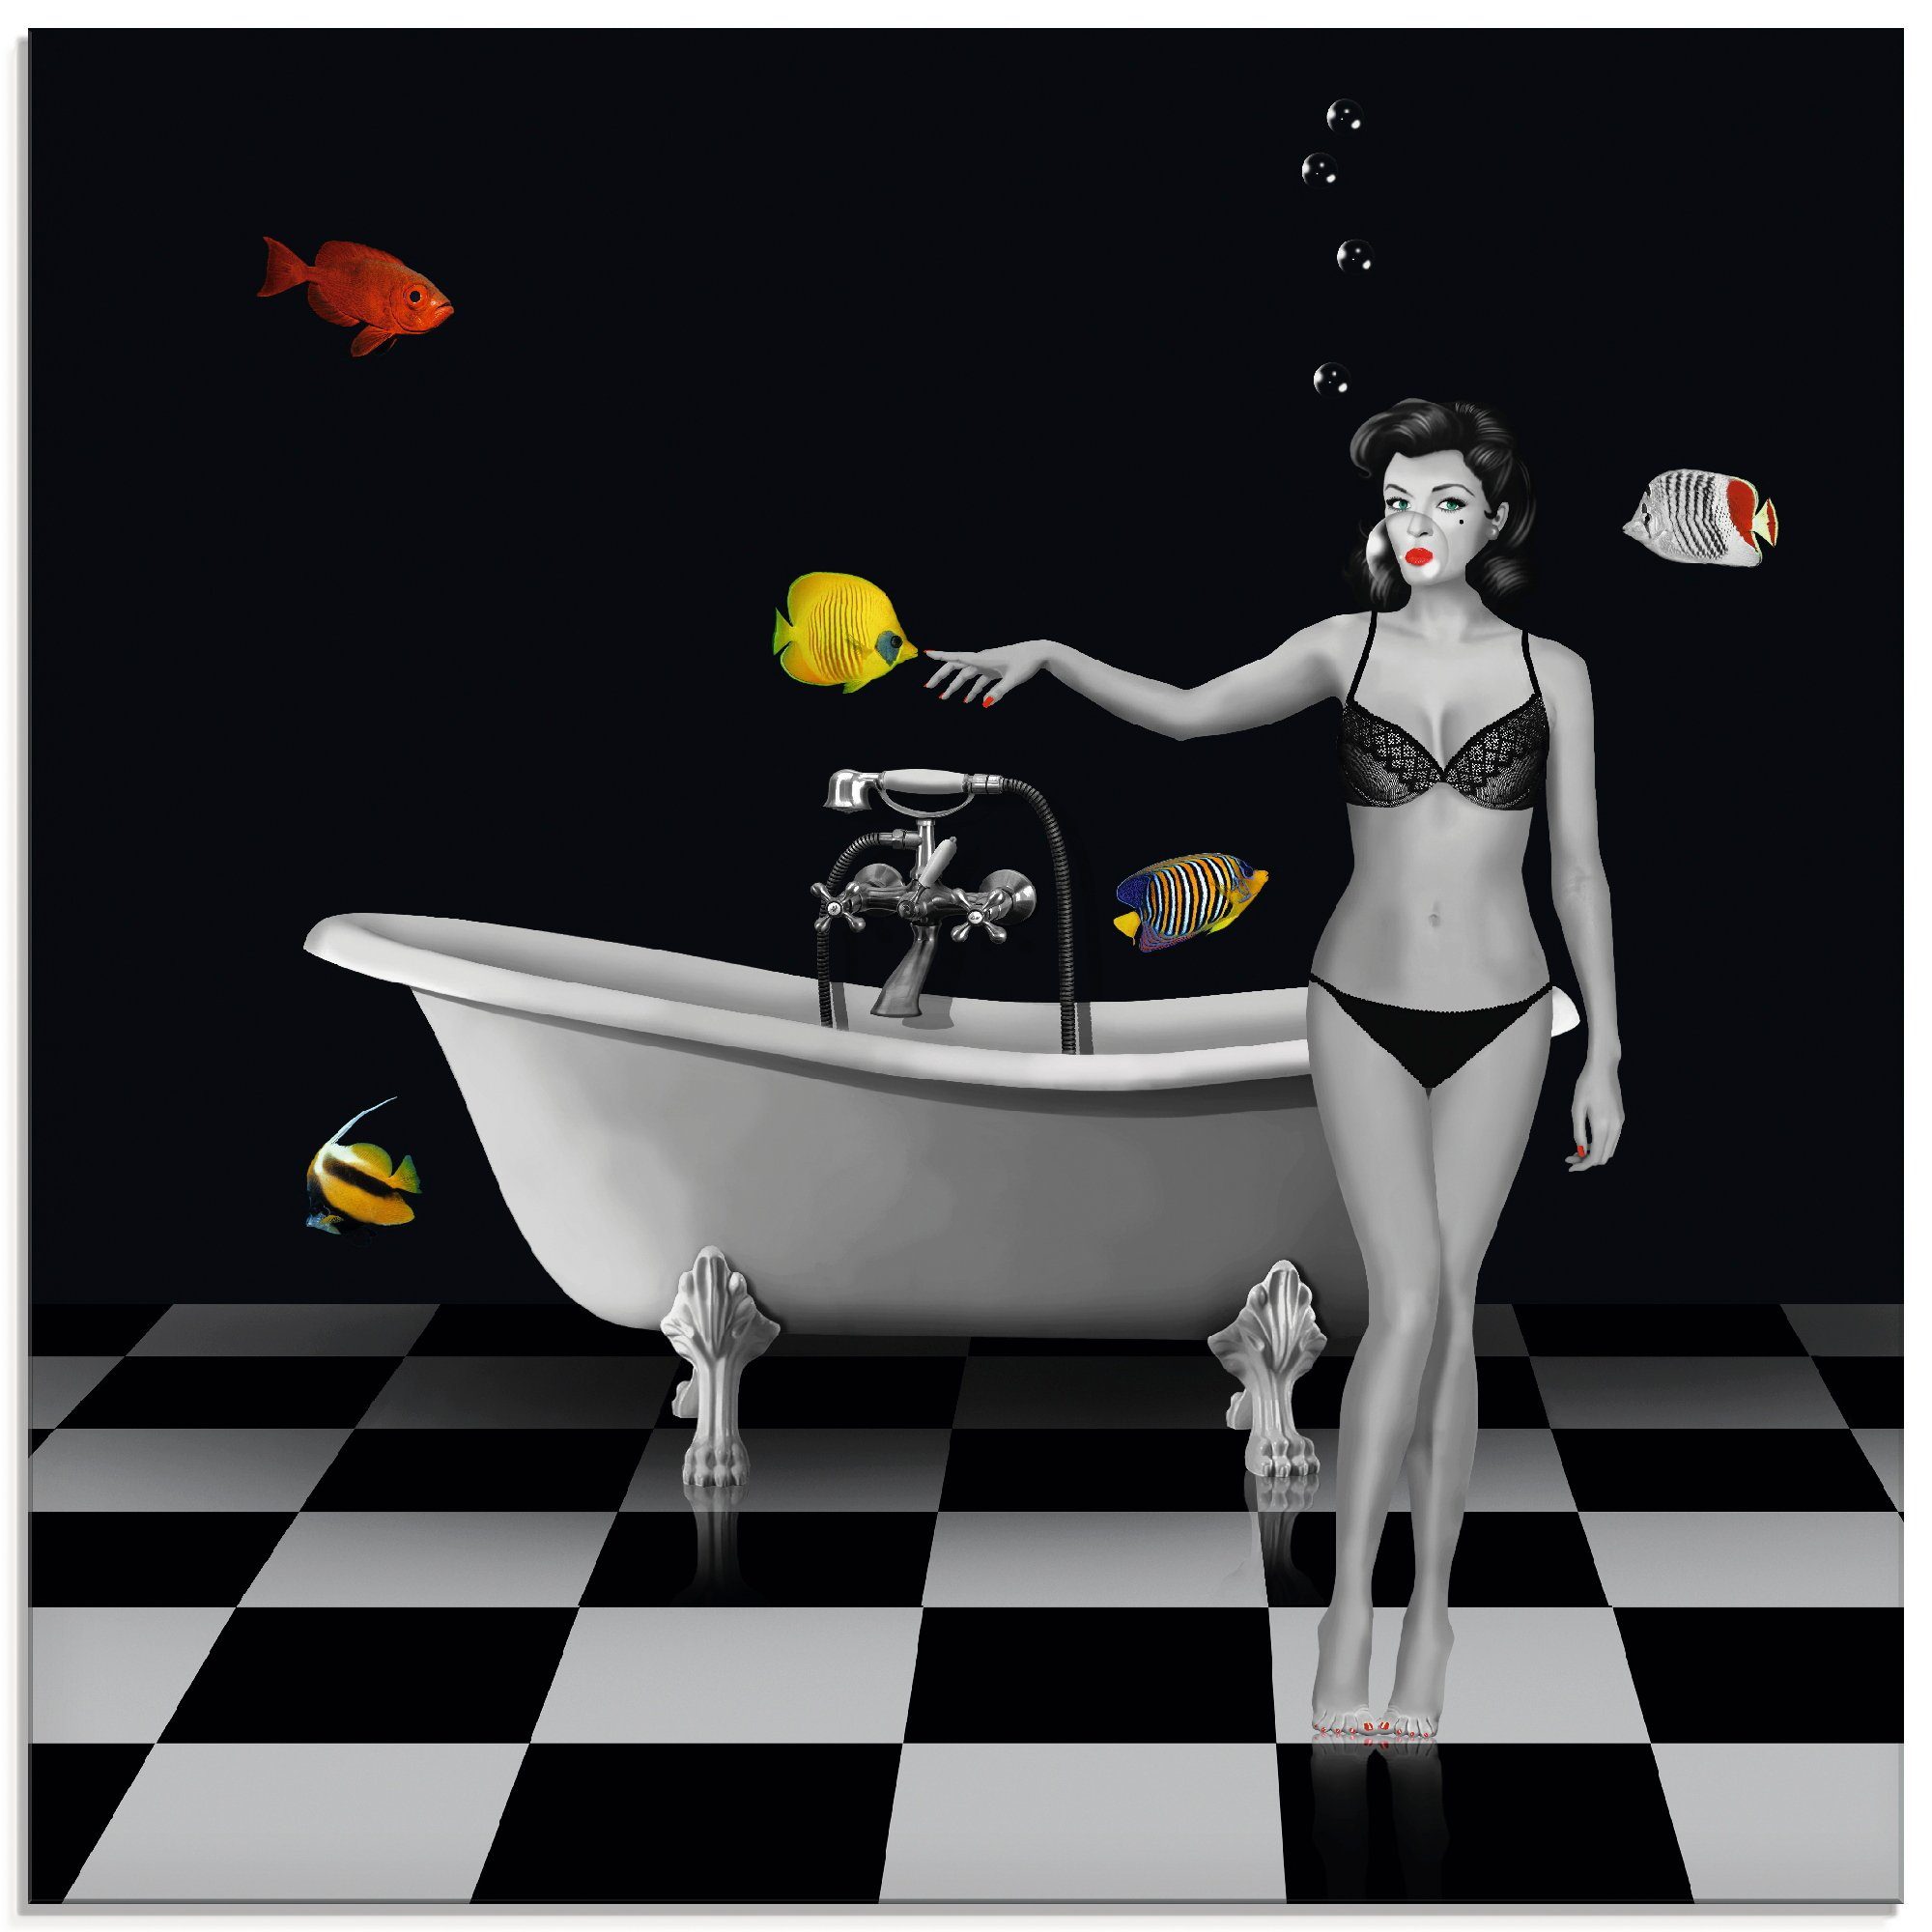 St), (1 Glasbild Fische, Artland in für Badezimmer Größen Ein Frau verschiedenen